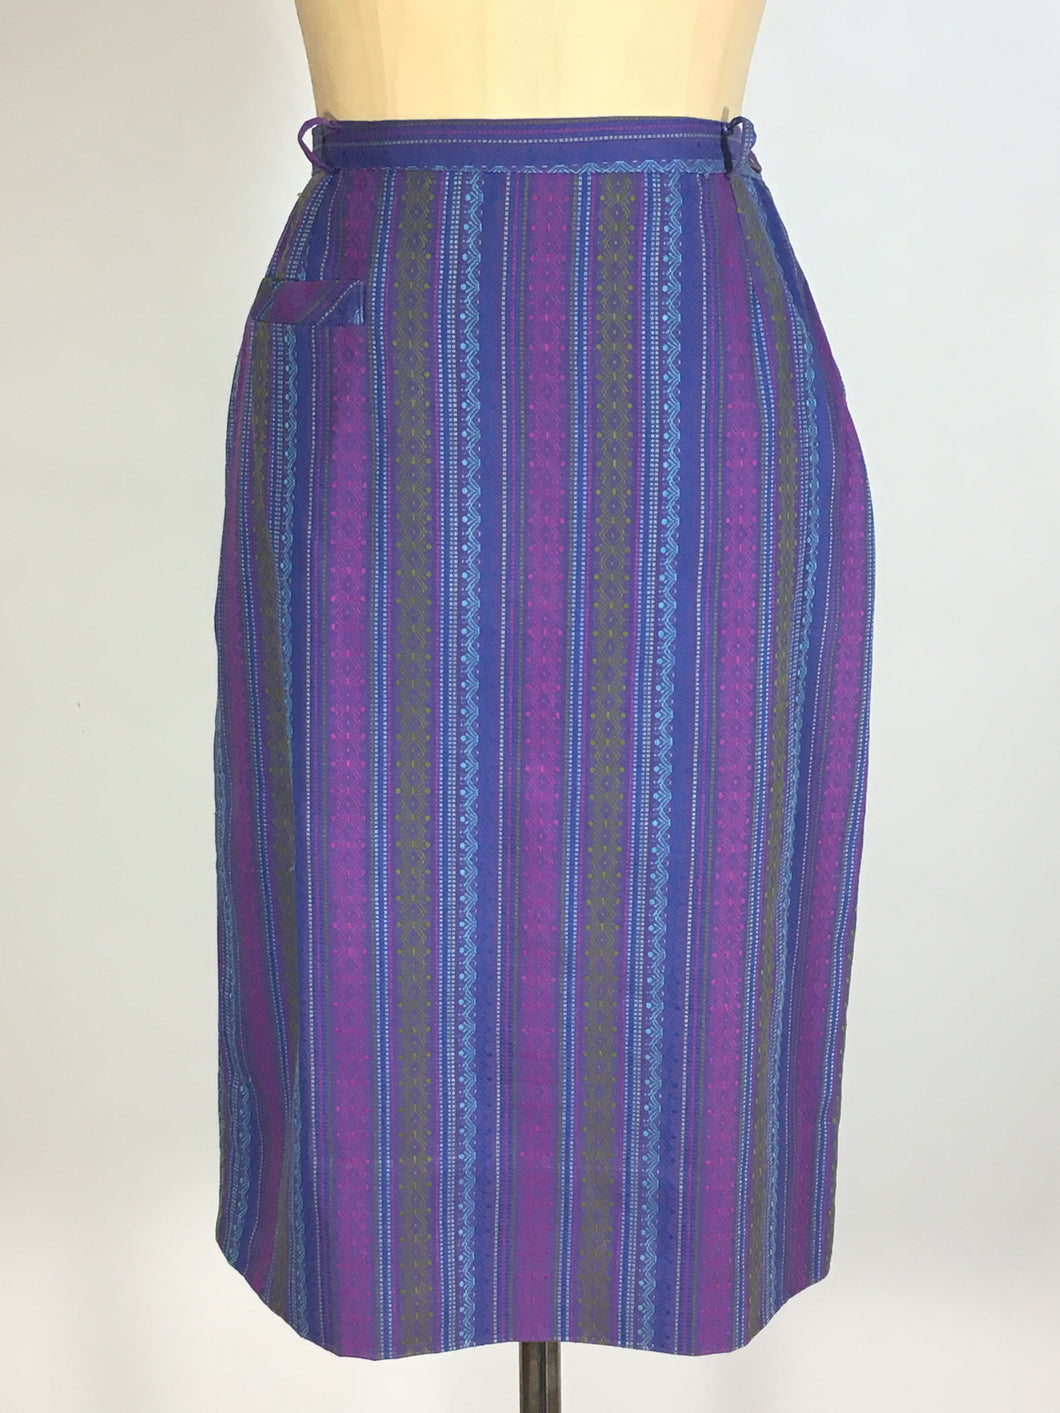 1950’s-60’s purple cotton weave pencil skirt